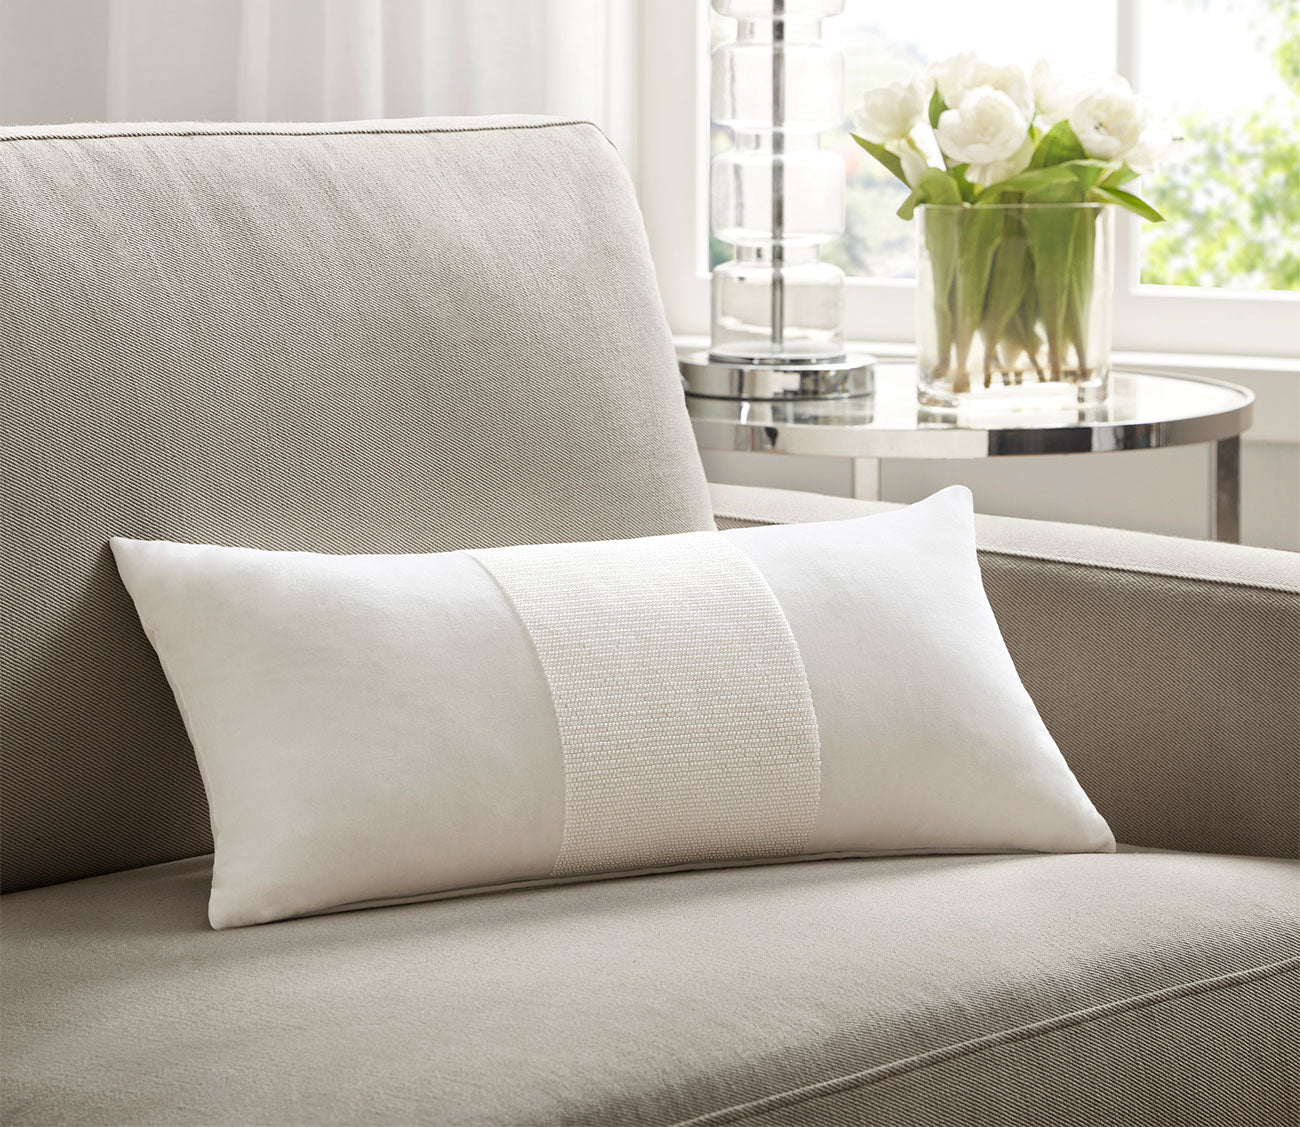 Canova White Velvet Oblong Throw Pillow by Croscill Home